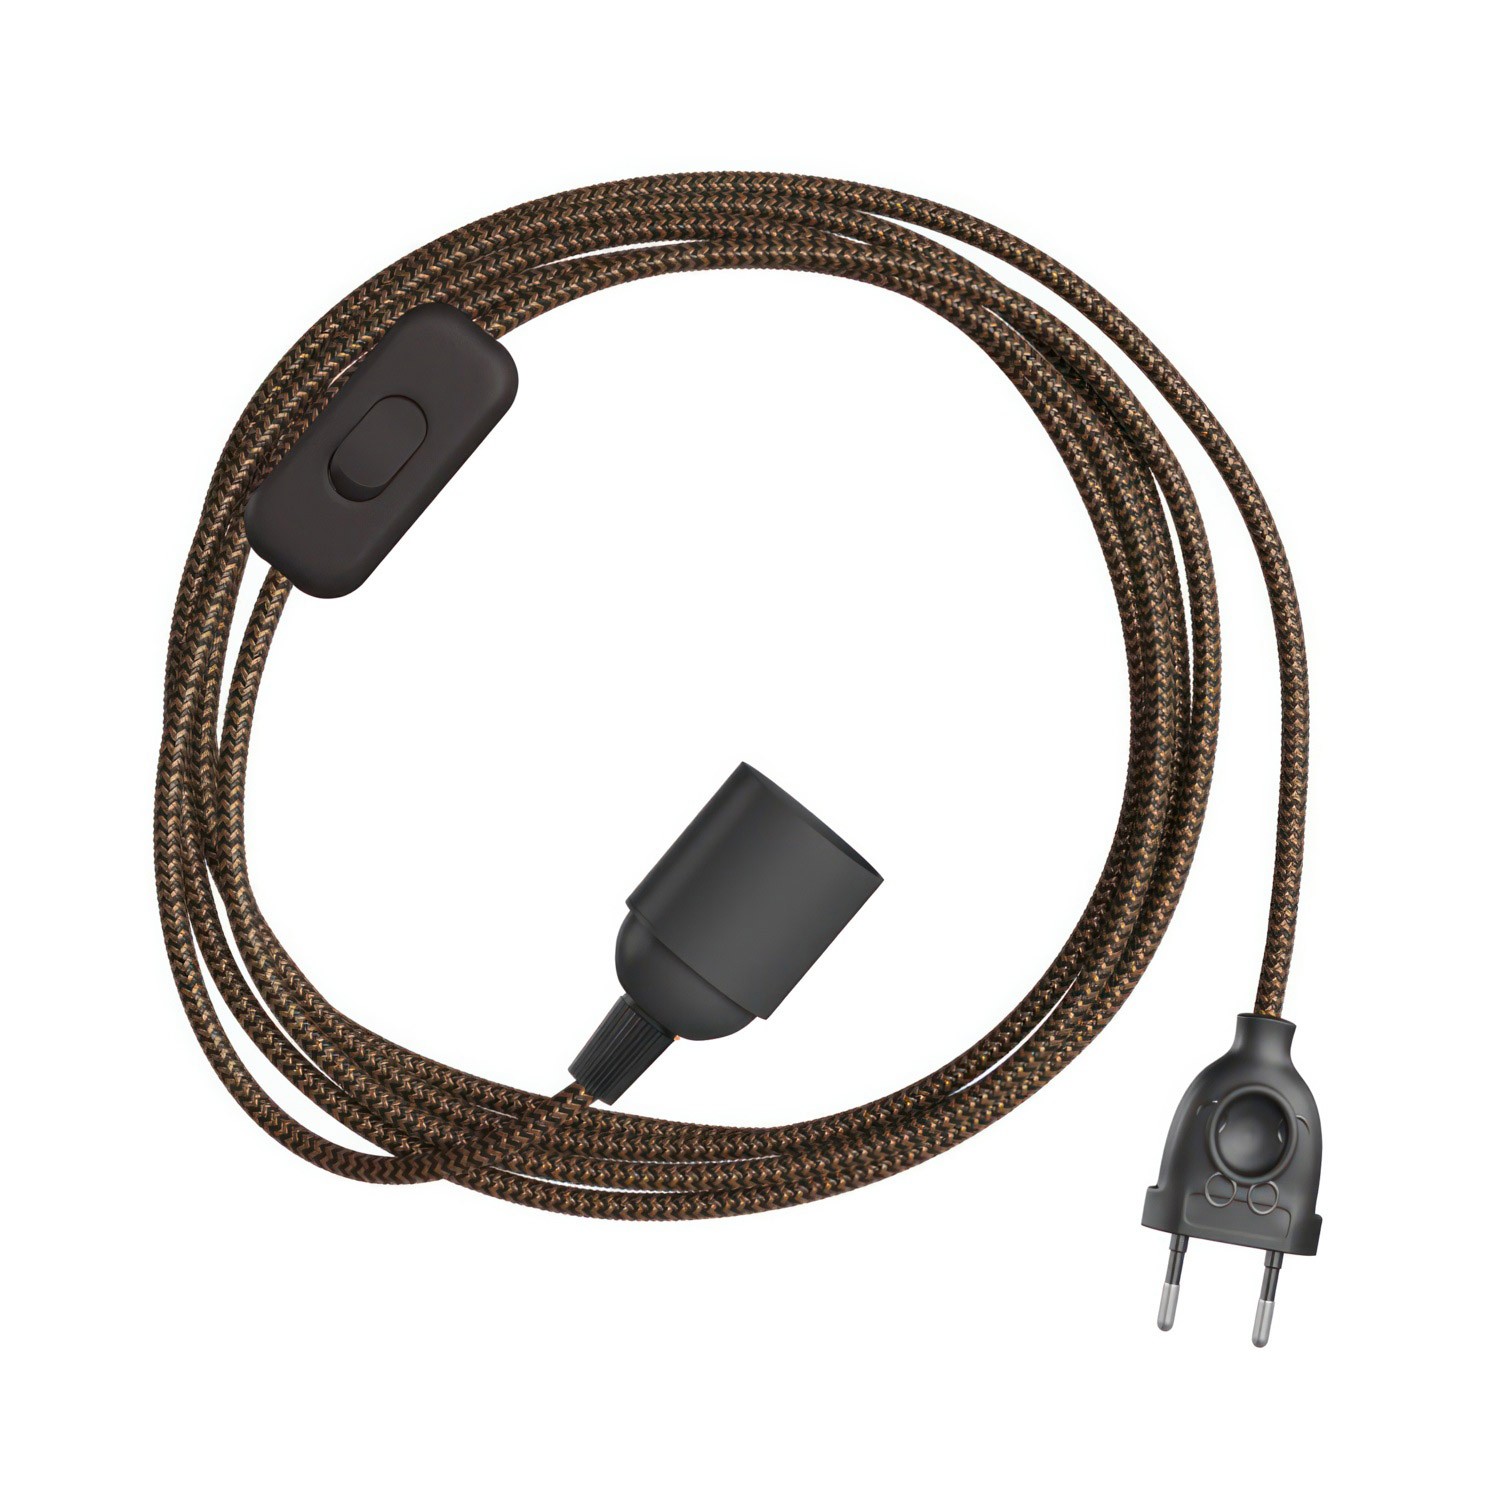 SnakeBis Cikk-cakk - Kábel foglalattal és cikk-cakk hatású textilkábellel